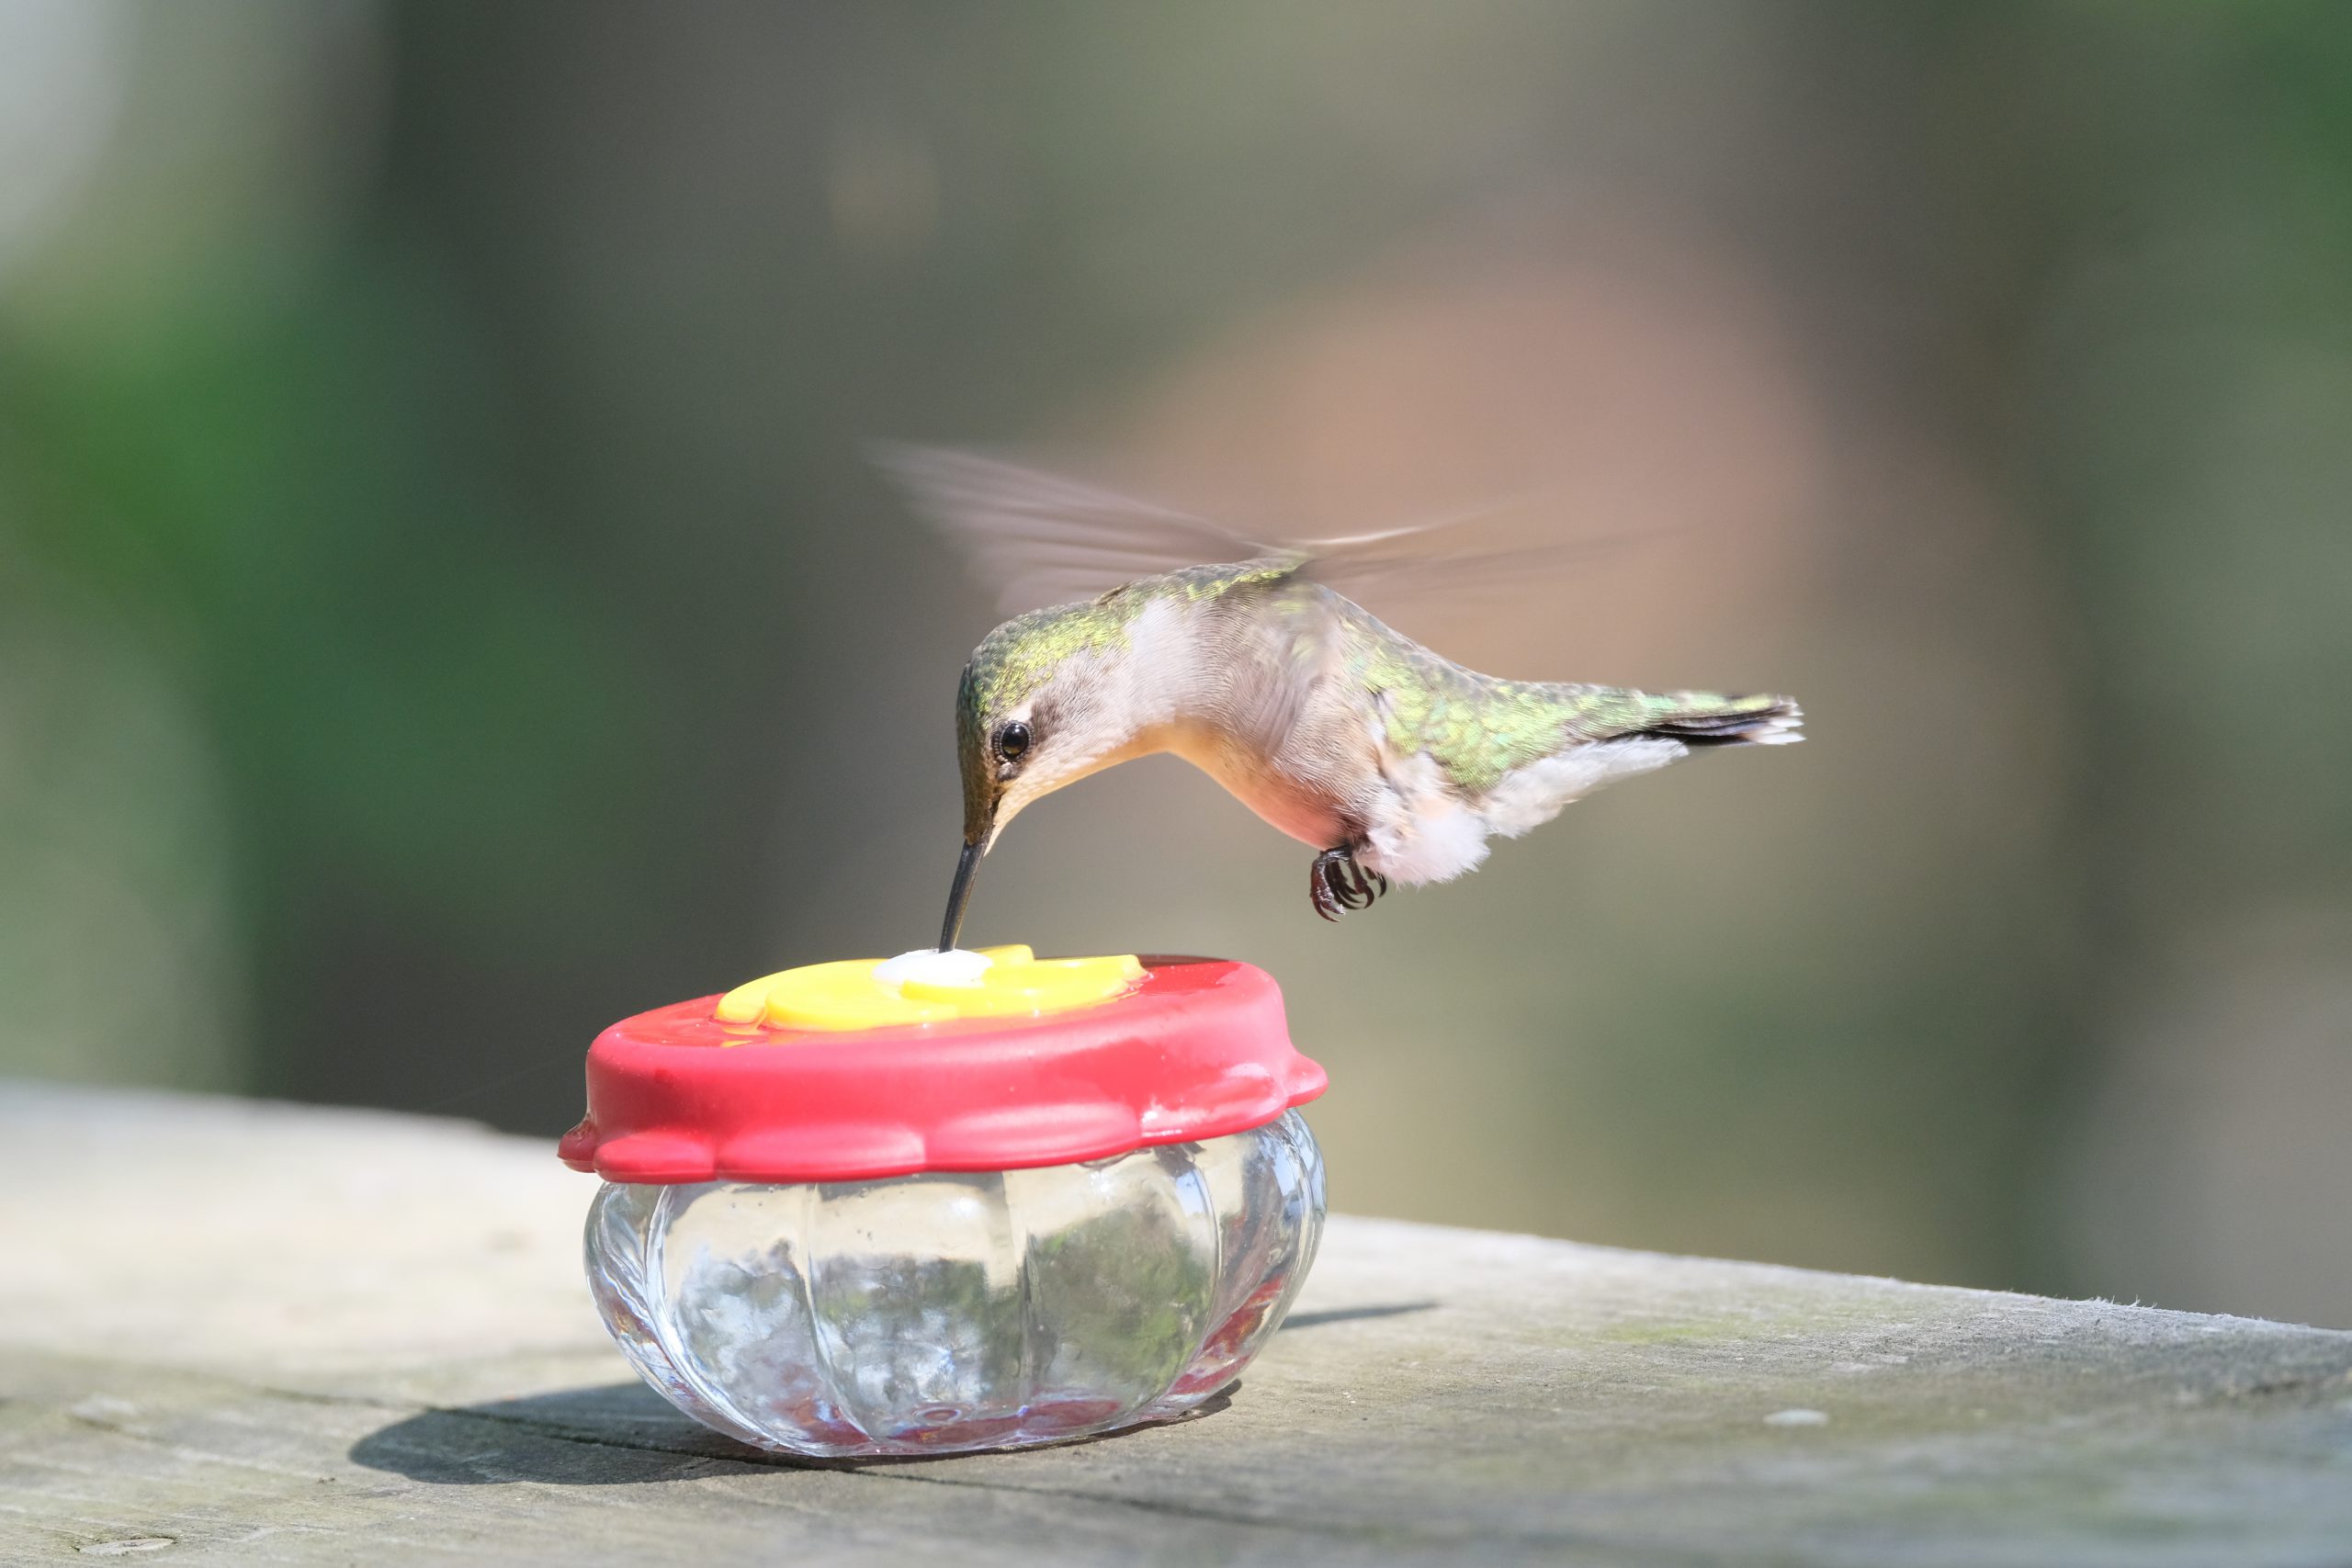 WREESH Mangeoire à eau pour colibris Mangeoire à oiseaux en verre Mangeoire  à colibris en verre peint 